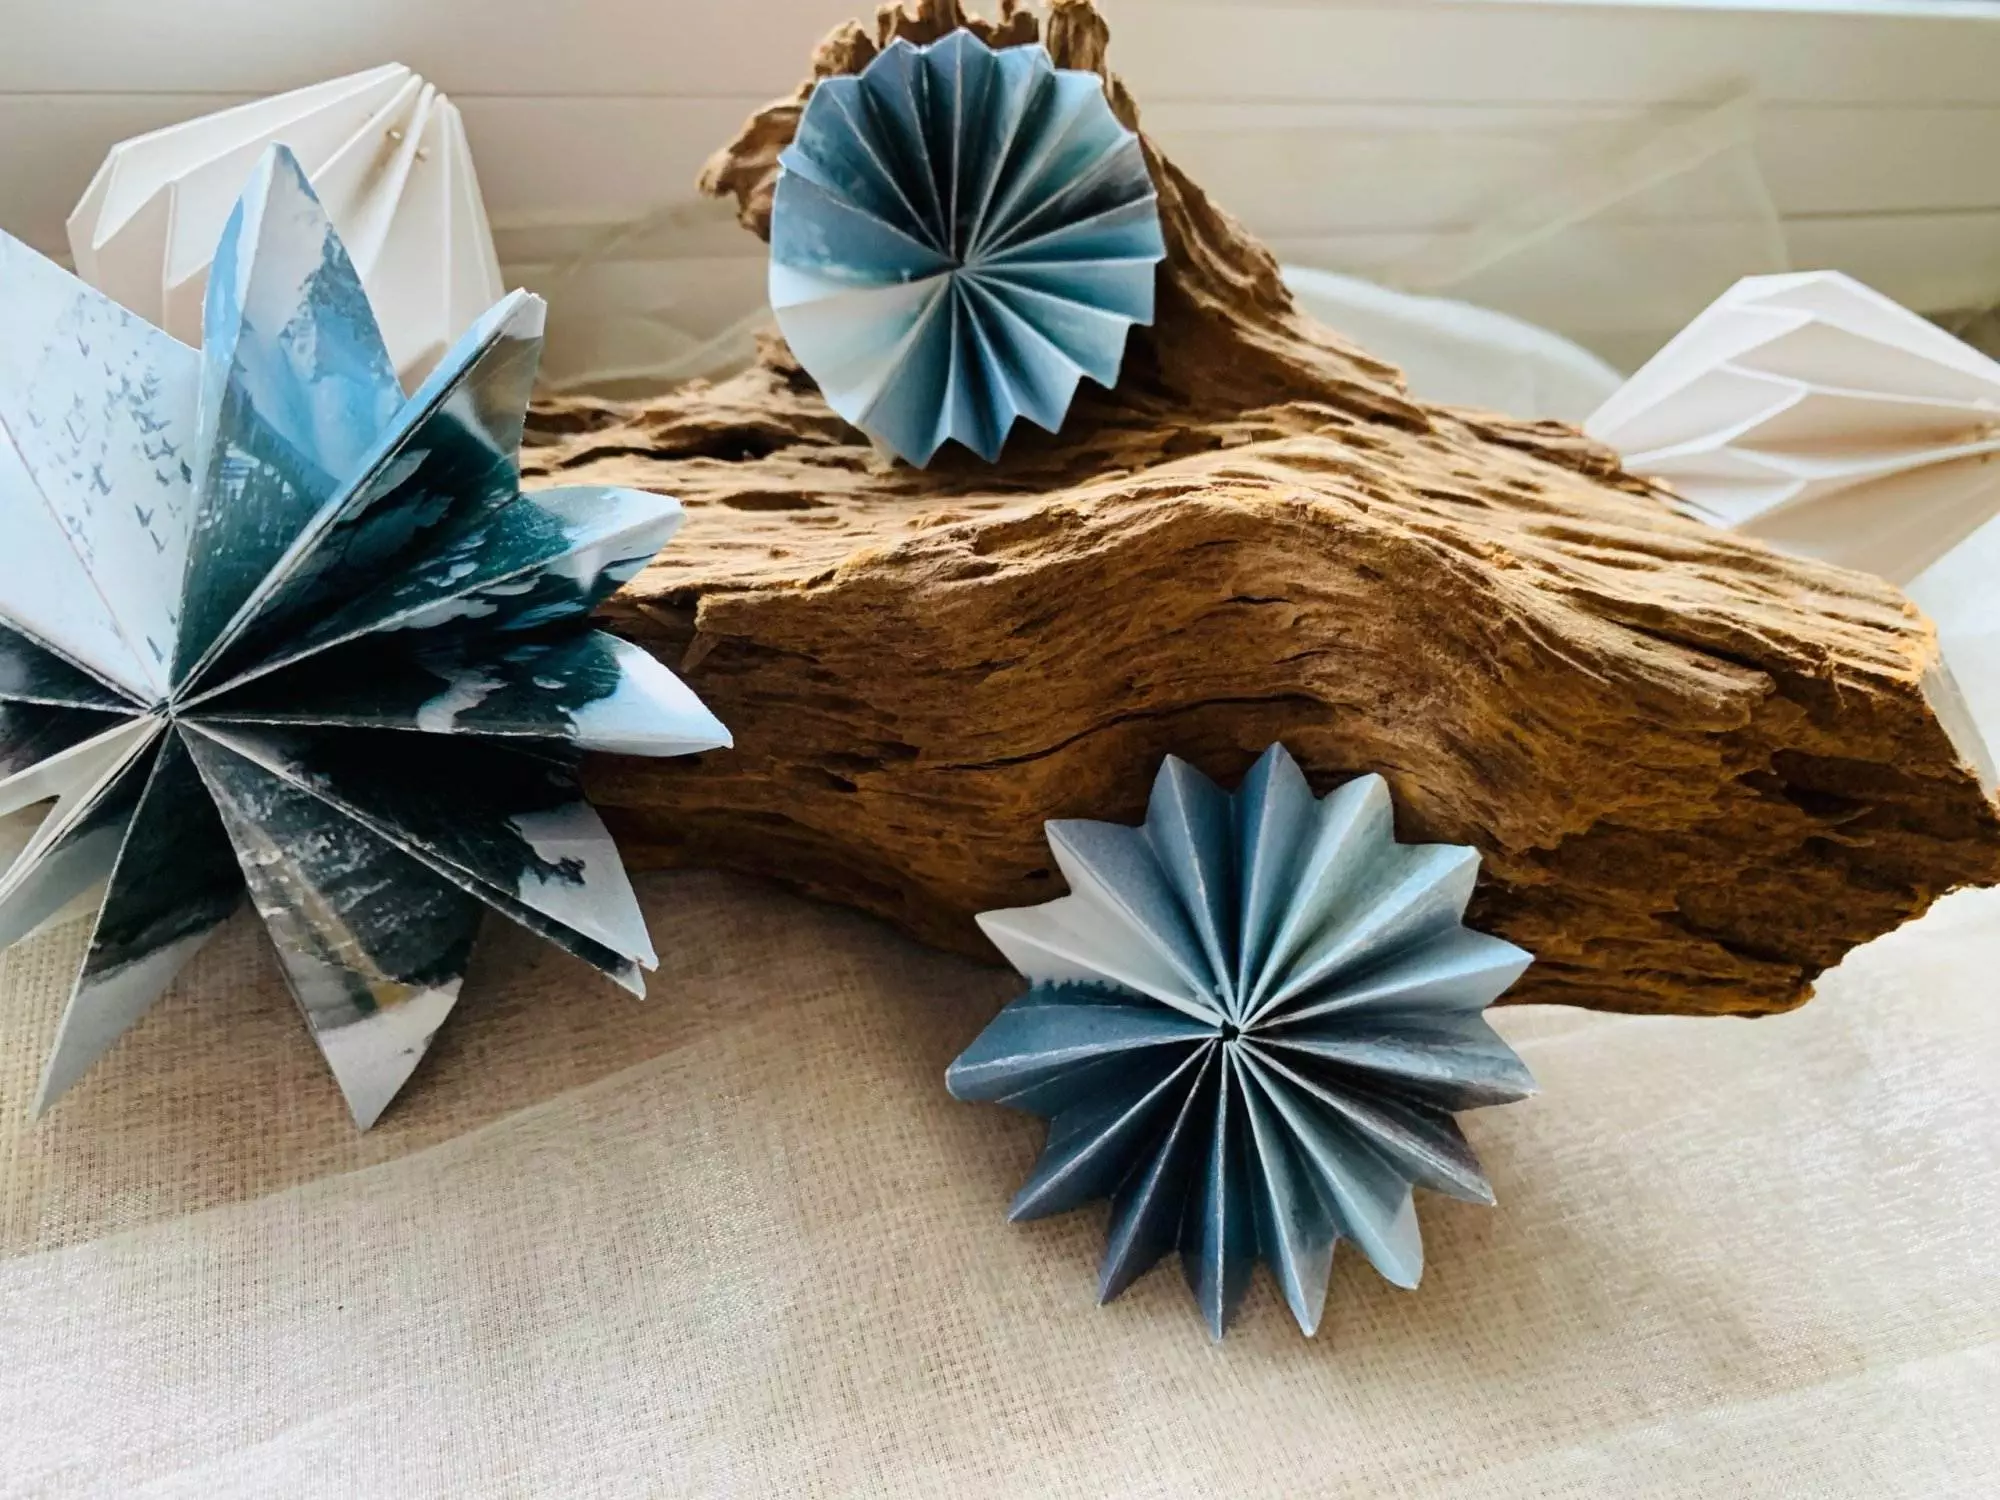 Drei Origami-Sterne auf einem Stück Holz.